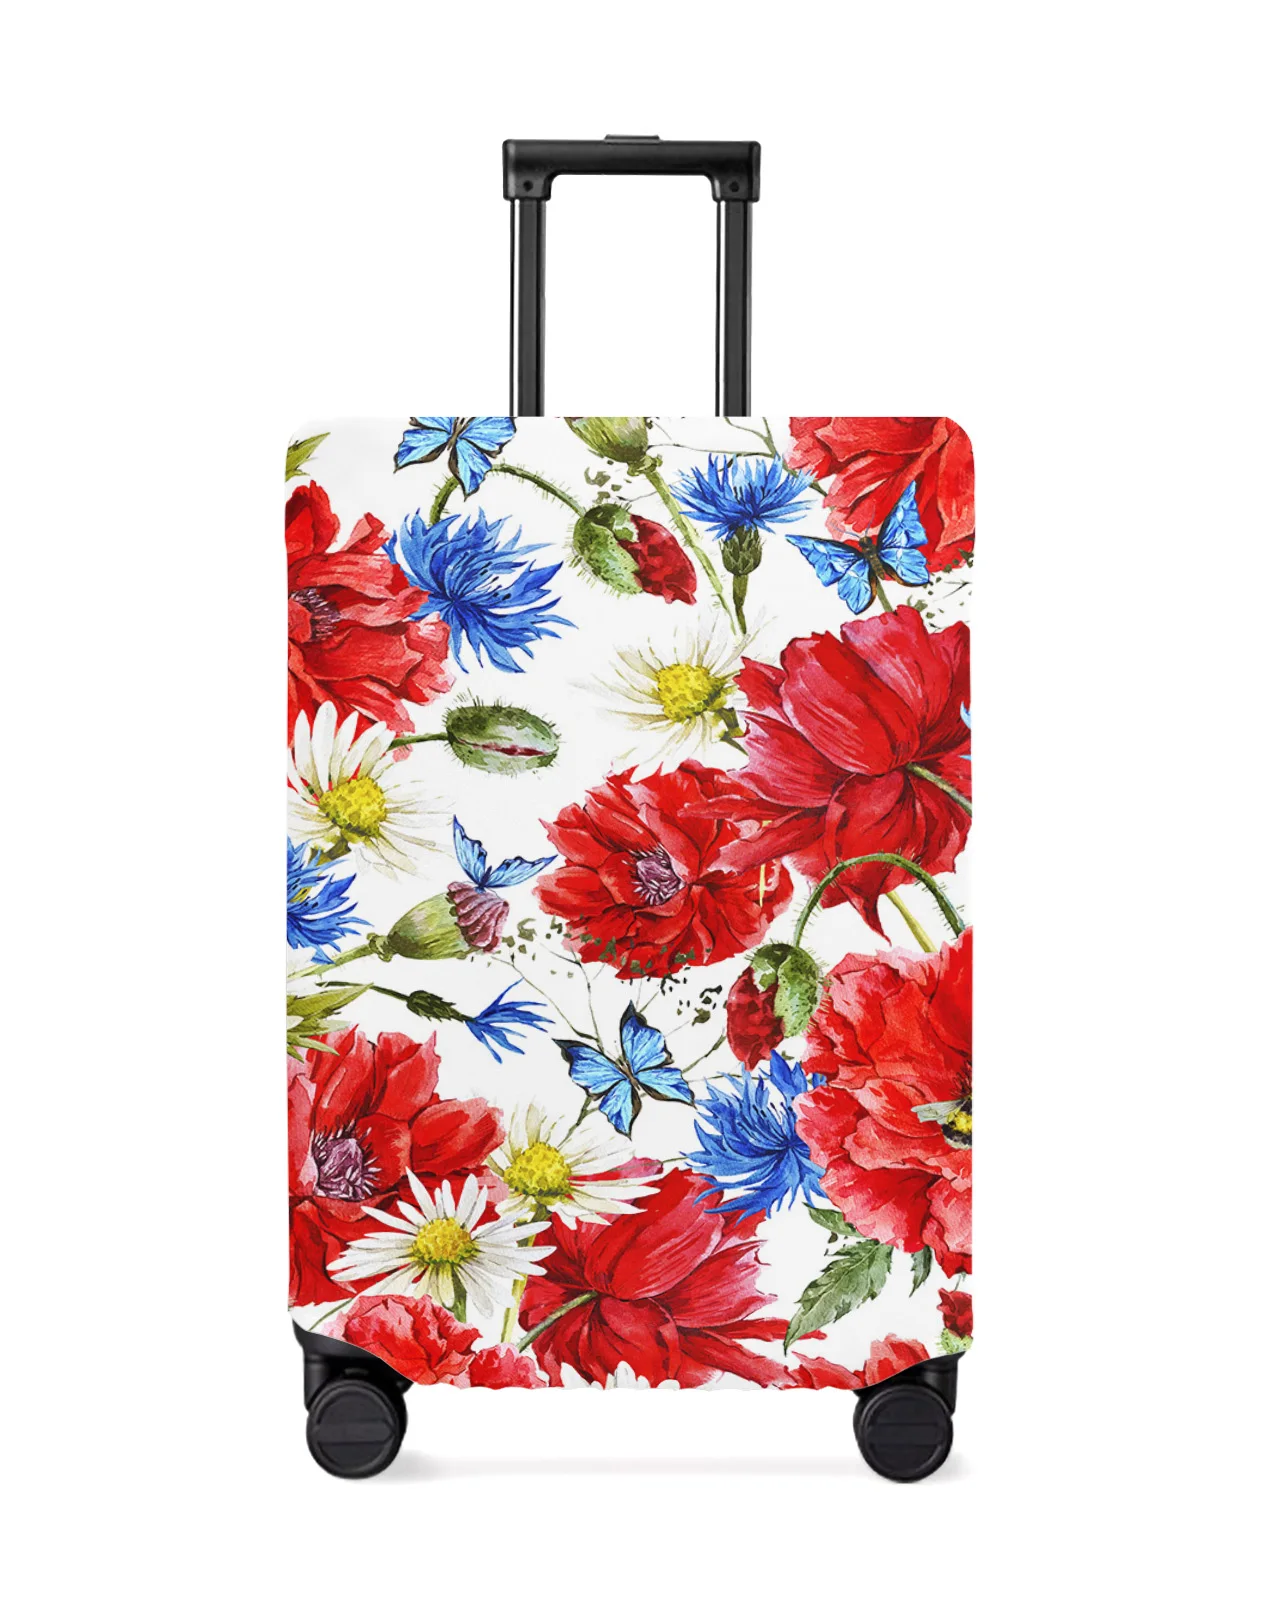 cubierta-protectora-de-equipaje-de-viaje-funda-elastica-antipolvo-accesorios-de-maleta-red-poppy-daisy-flower